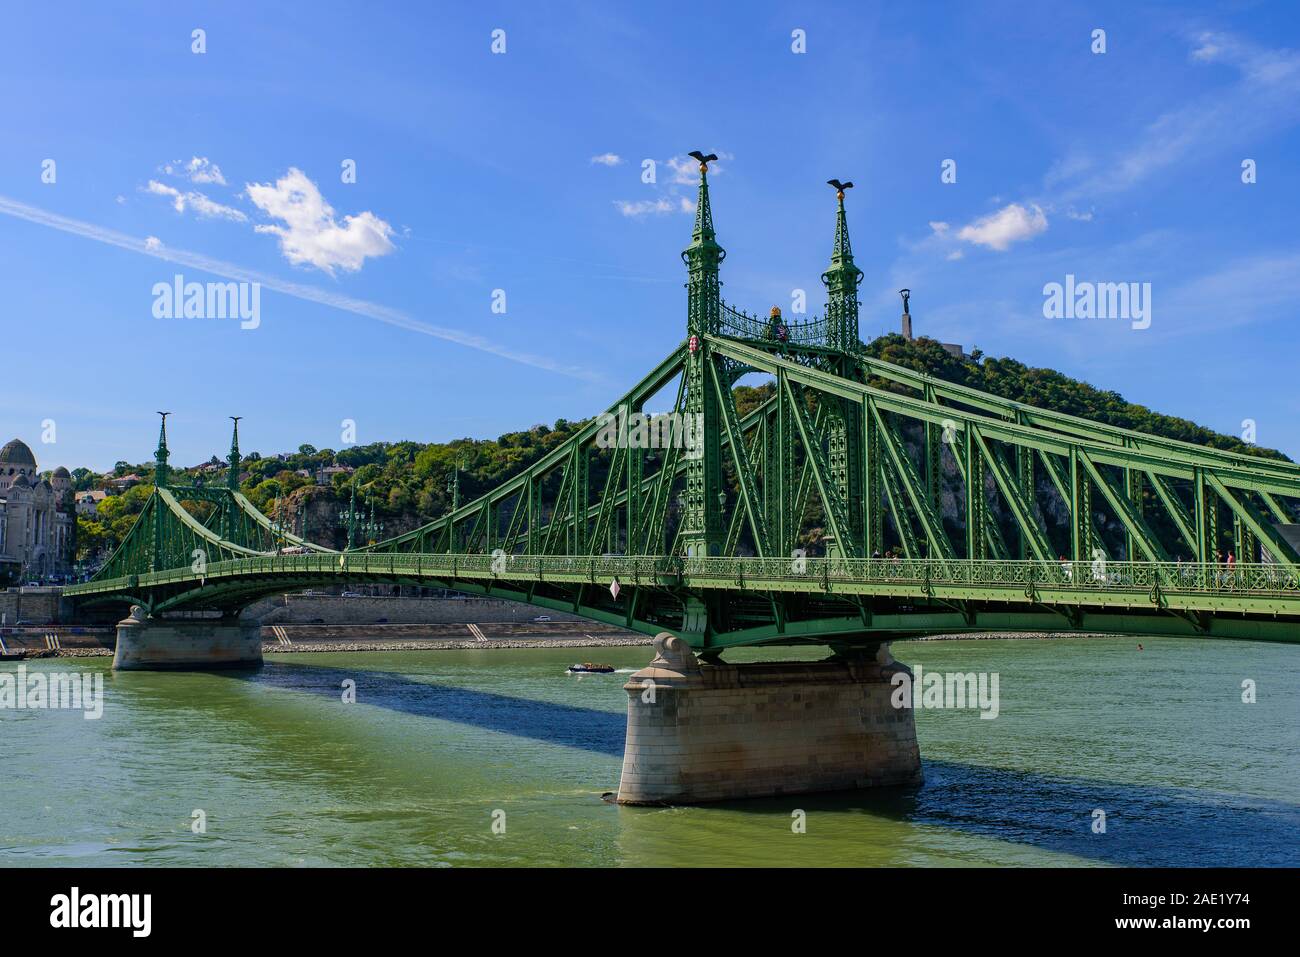 Puente Liberty, un puente que conecta Buda y Pest a través del río Danubio en Budapest, Hungría Foto de stock